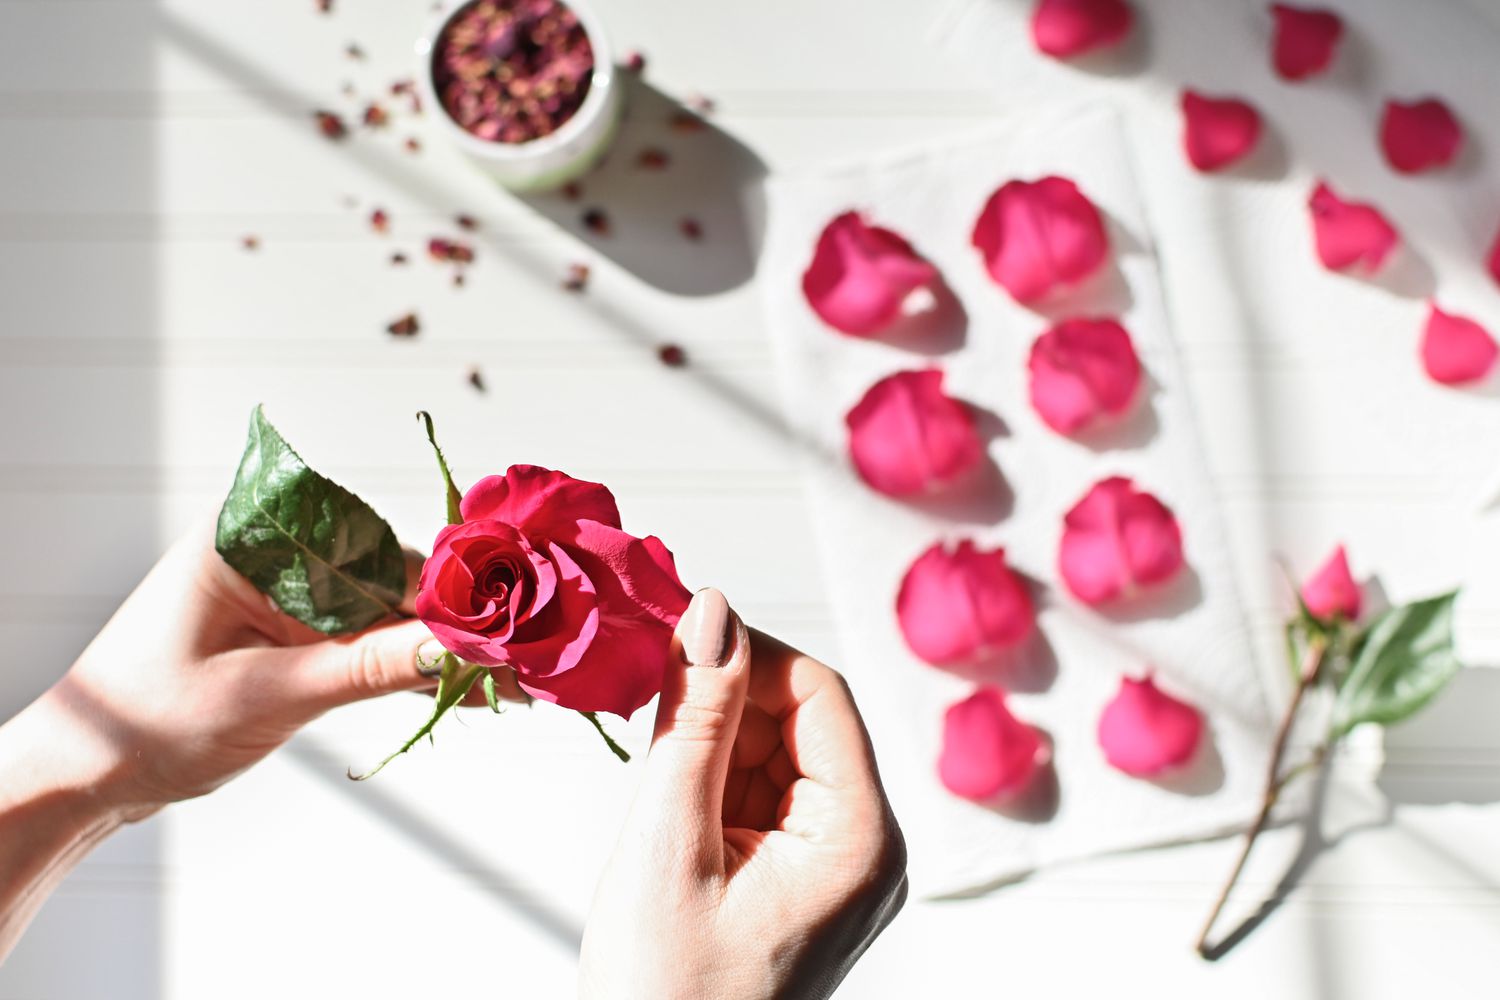 Rosenblütenblätter vom Blütenstiel für Tees und Bastelarbeiten